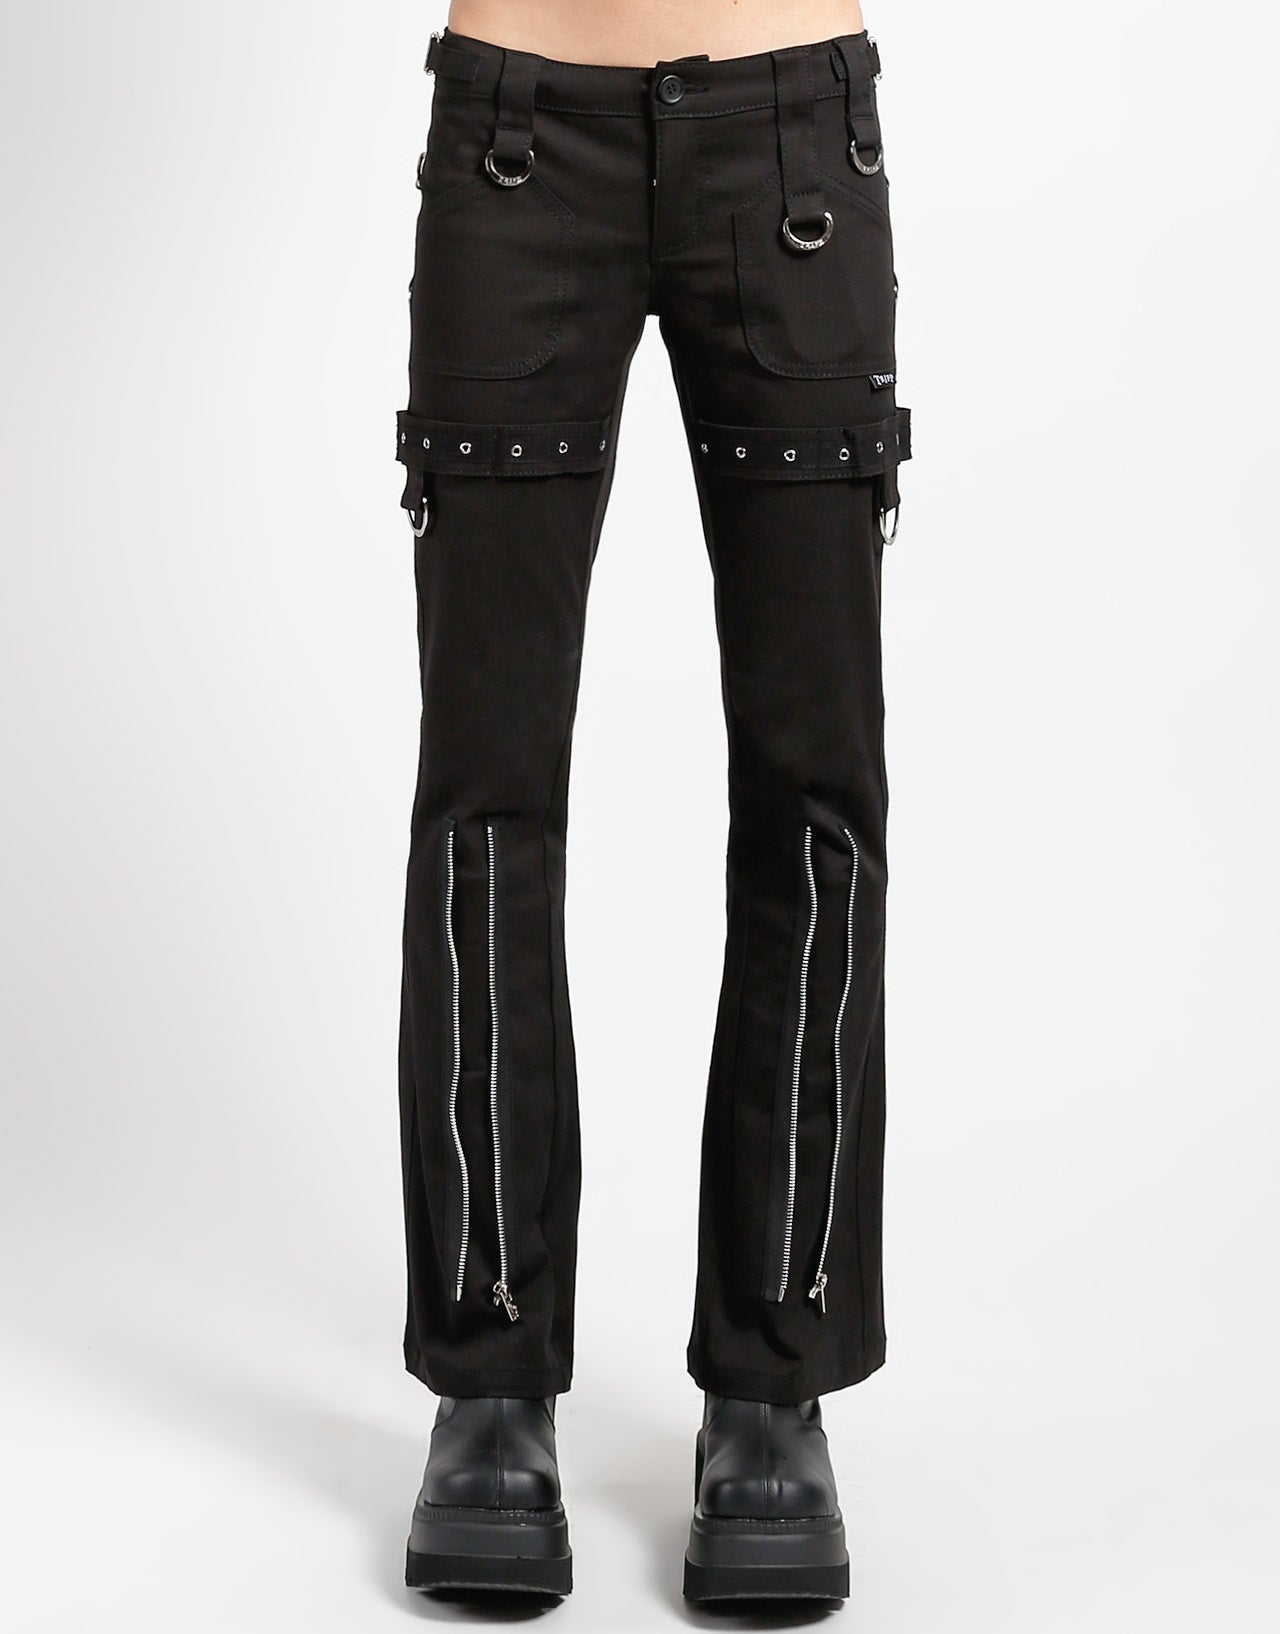 Stylish Black Slim Fit Knee Zipper Jeans